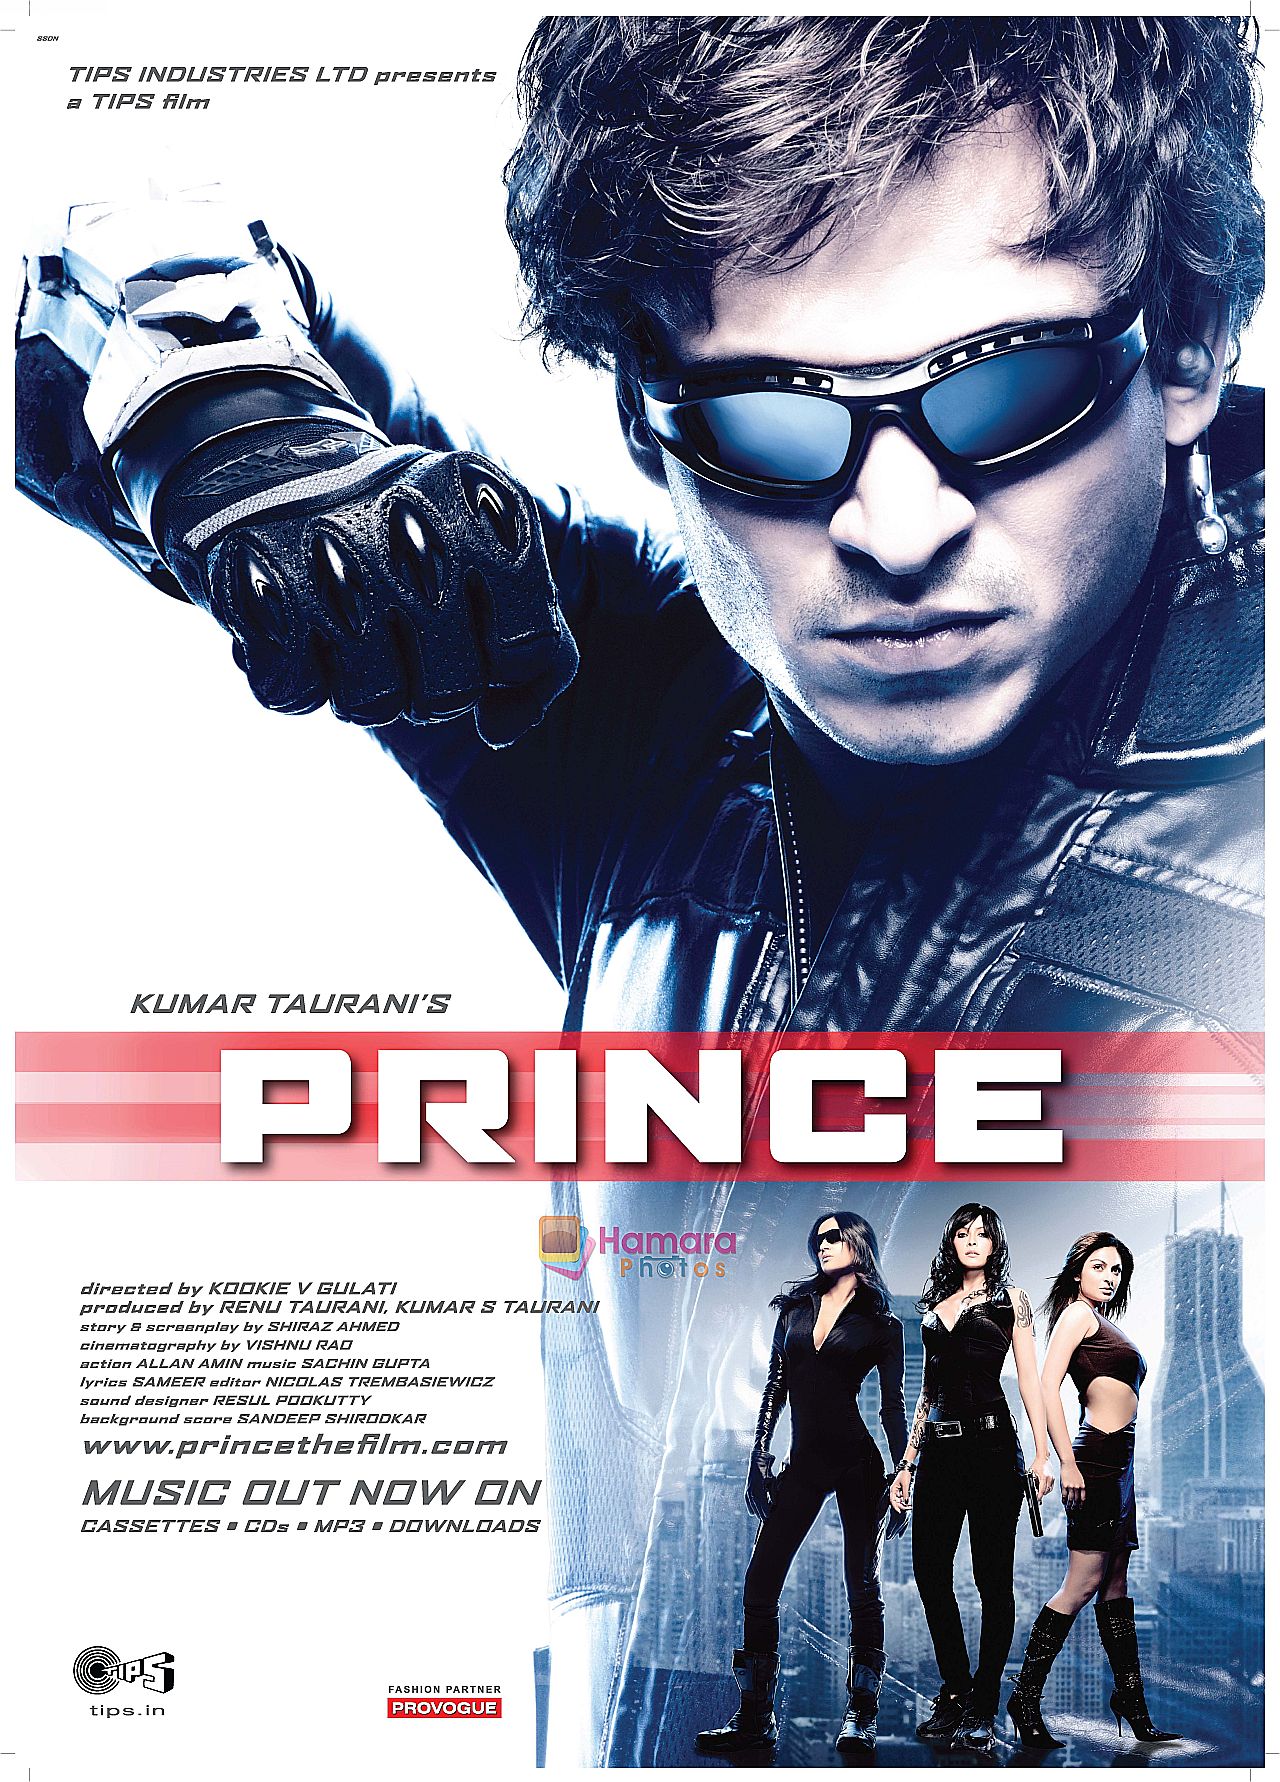 PRINCE Poster 